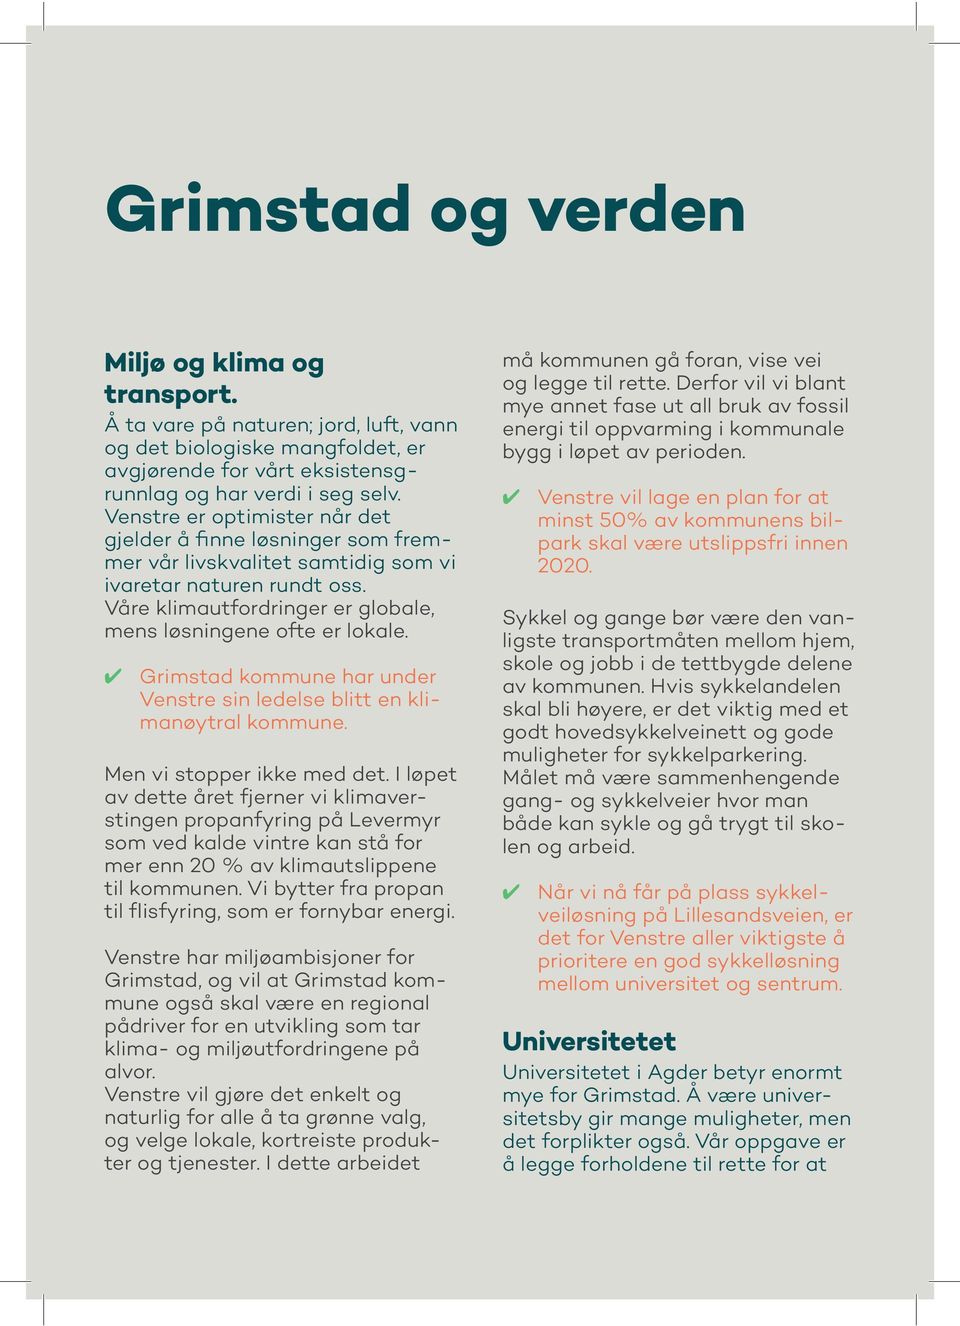 Grimstad kommune har under Venstre sin ledelse blitt en klimanøytral kommune. Men vi stopper ikke med det.